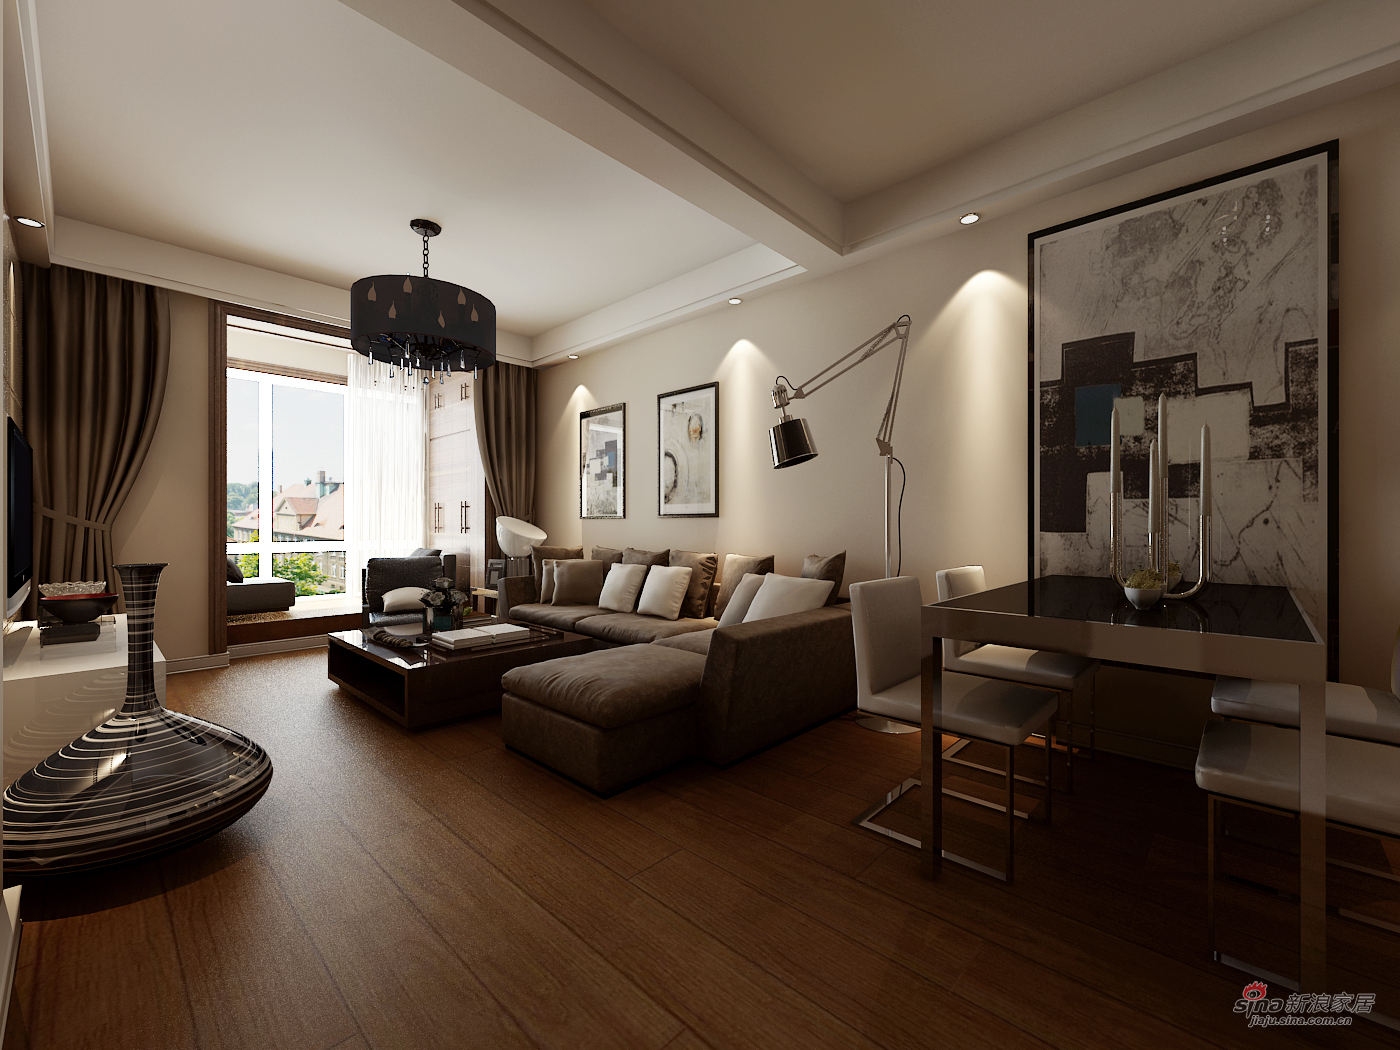 简约 一居 客厅图片来自用户2737786973在都市白领打造干练一居室96的分享